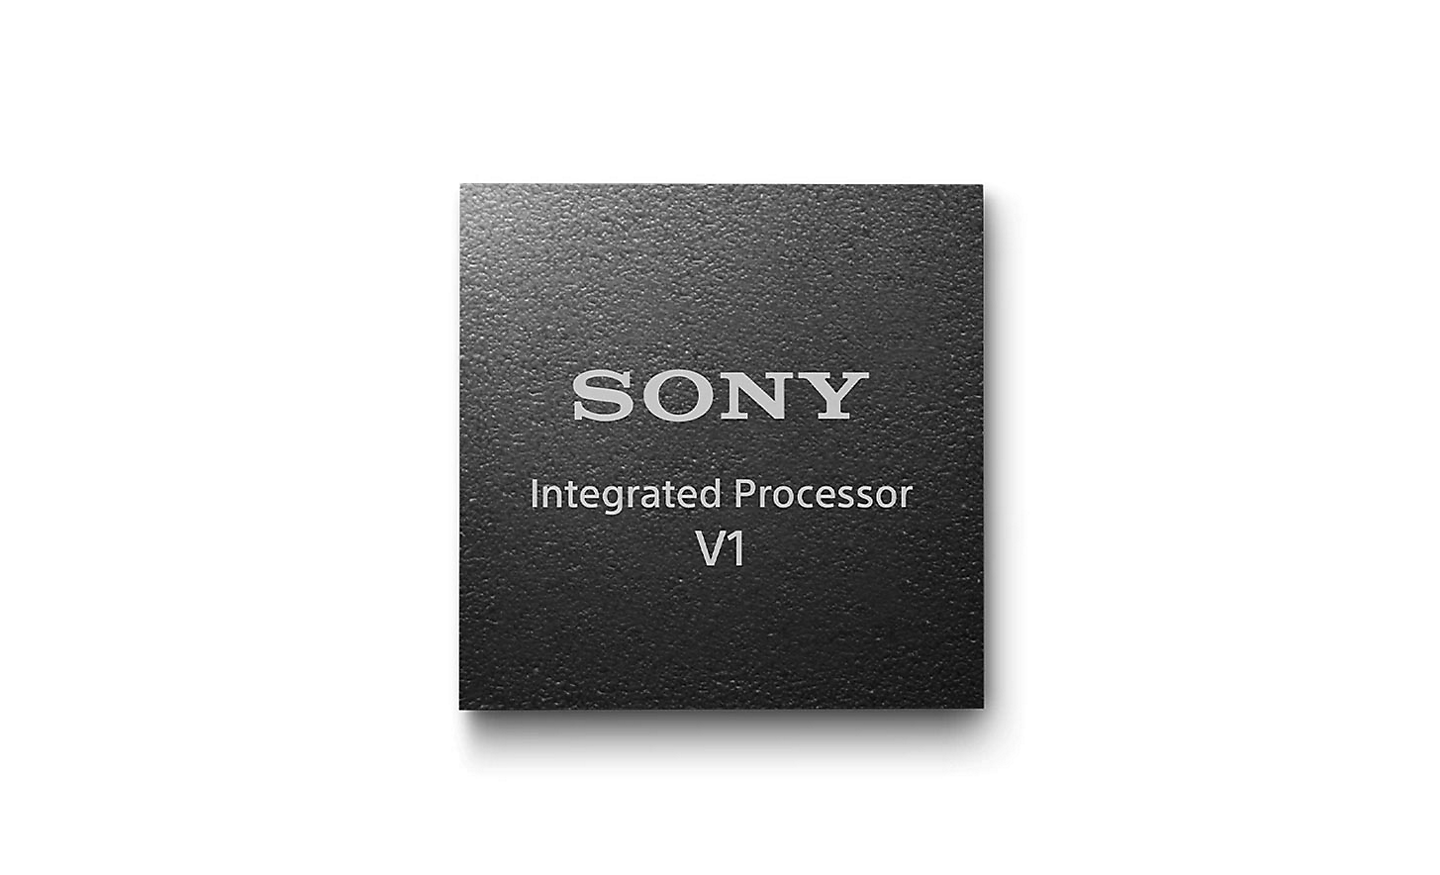 Imagen del procesador integrado V1 de Sony